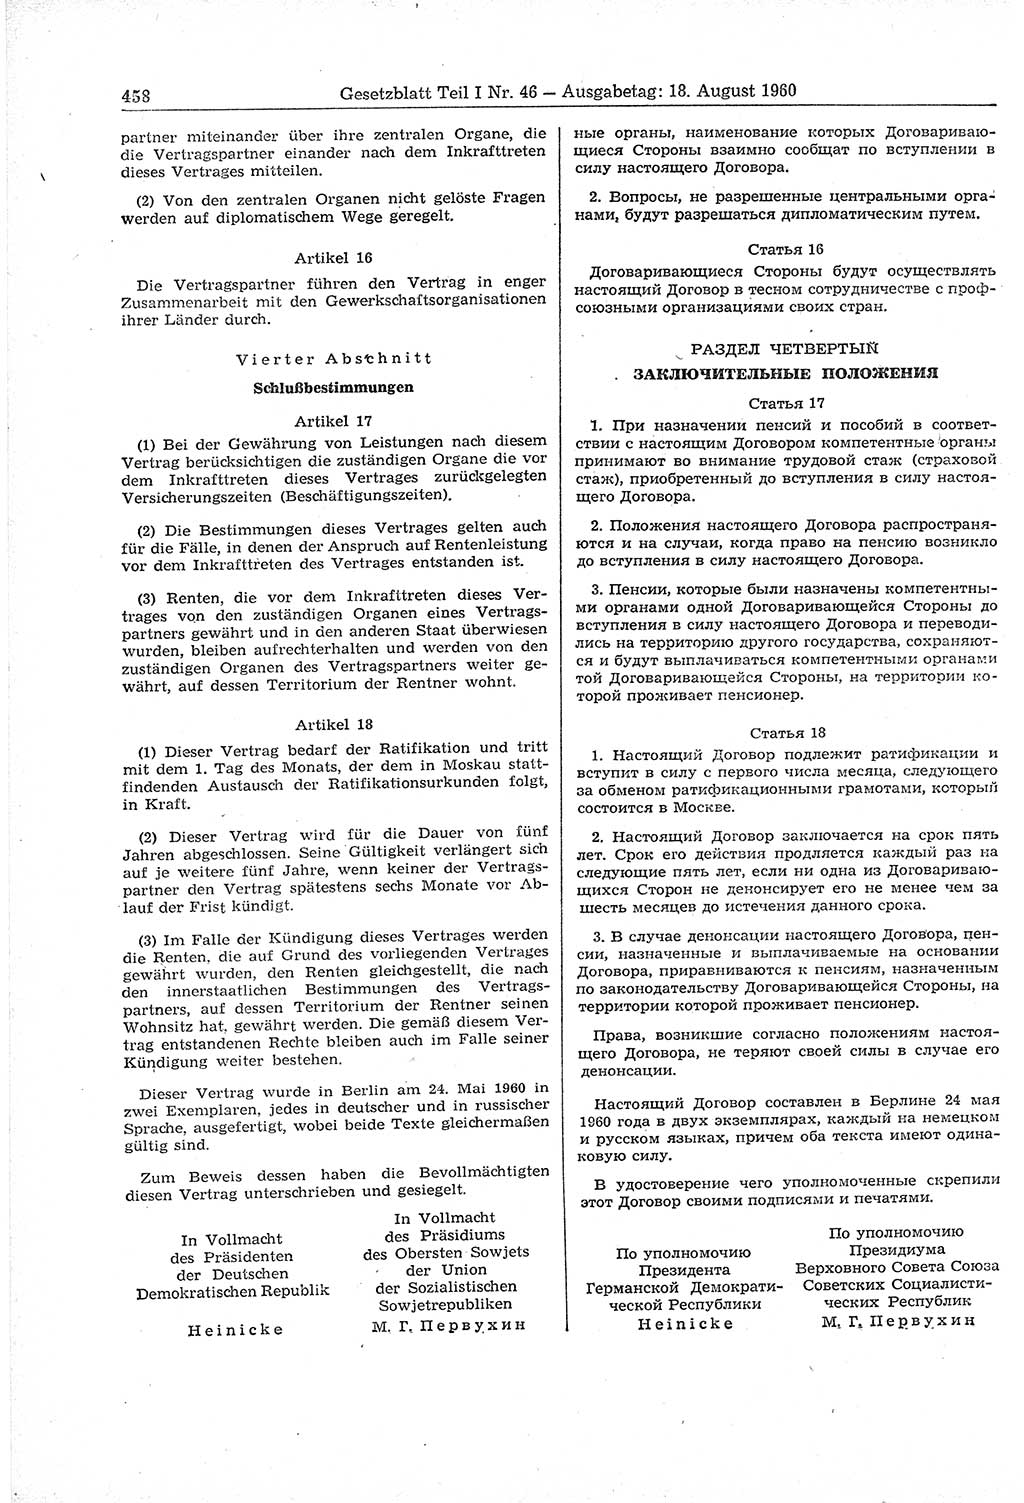 Gesetzblatt (GBl.) der Deutschen Demokratischen Republik (DDR) Teil Ⅰ 1960, Seite 458 (GBl. DDR Ⅰ 1960, S. 458)